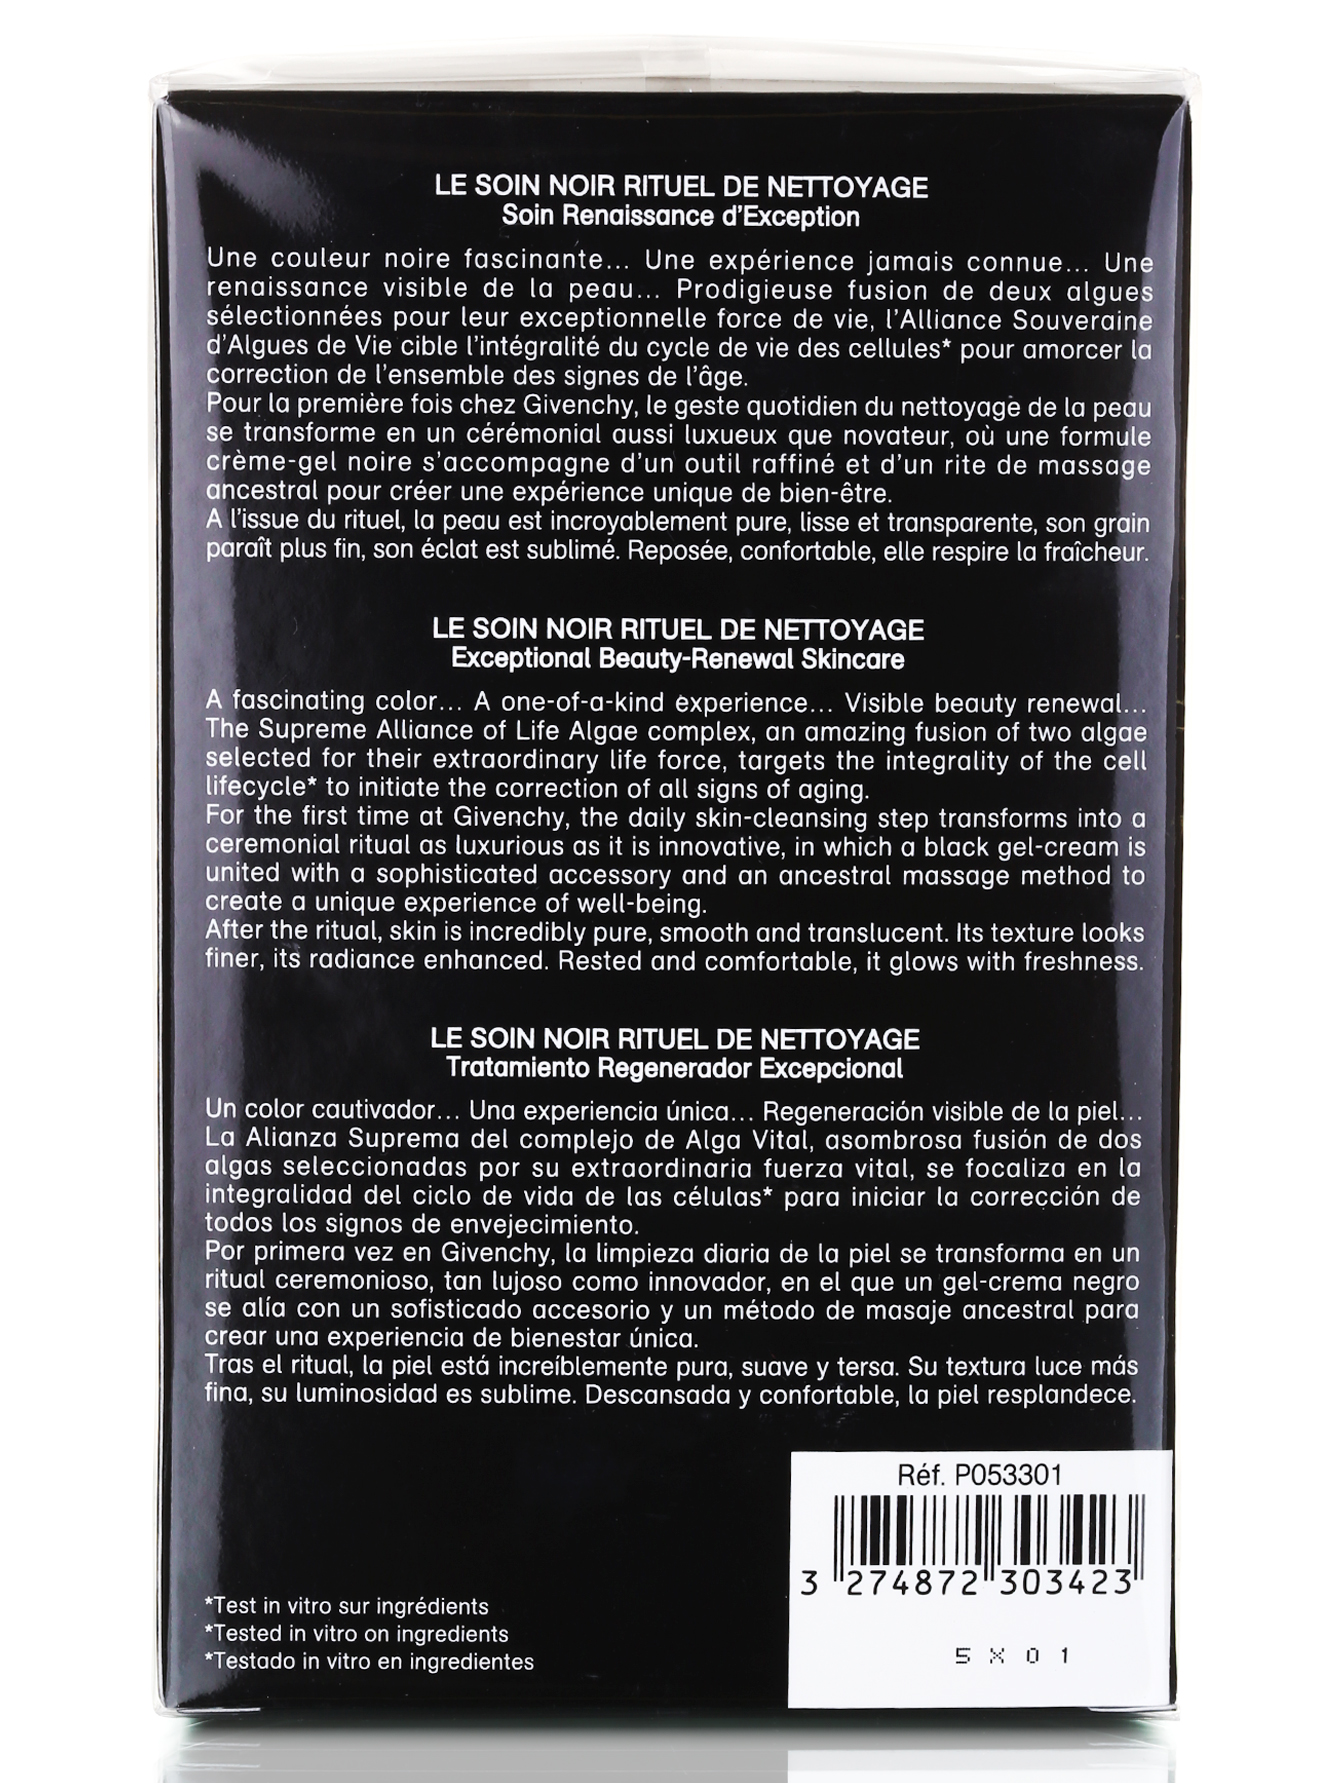  Очищающий уход - "сокровище" для лица - Le Soin Noir, 175ml - Модель Верх-Низ